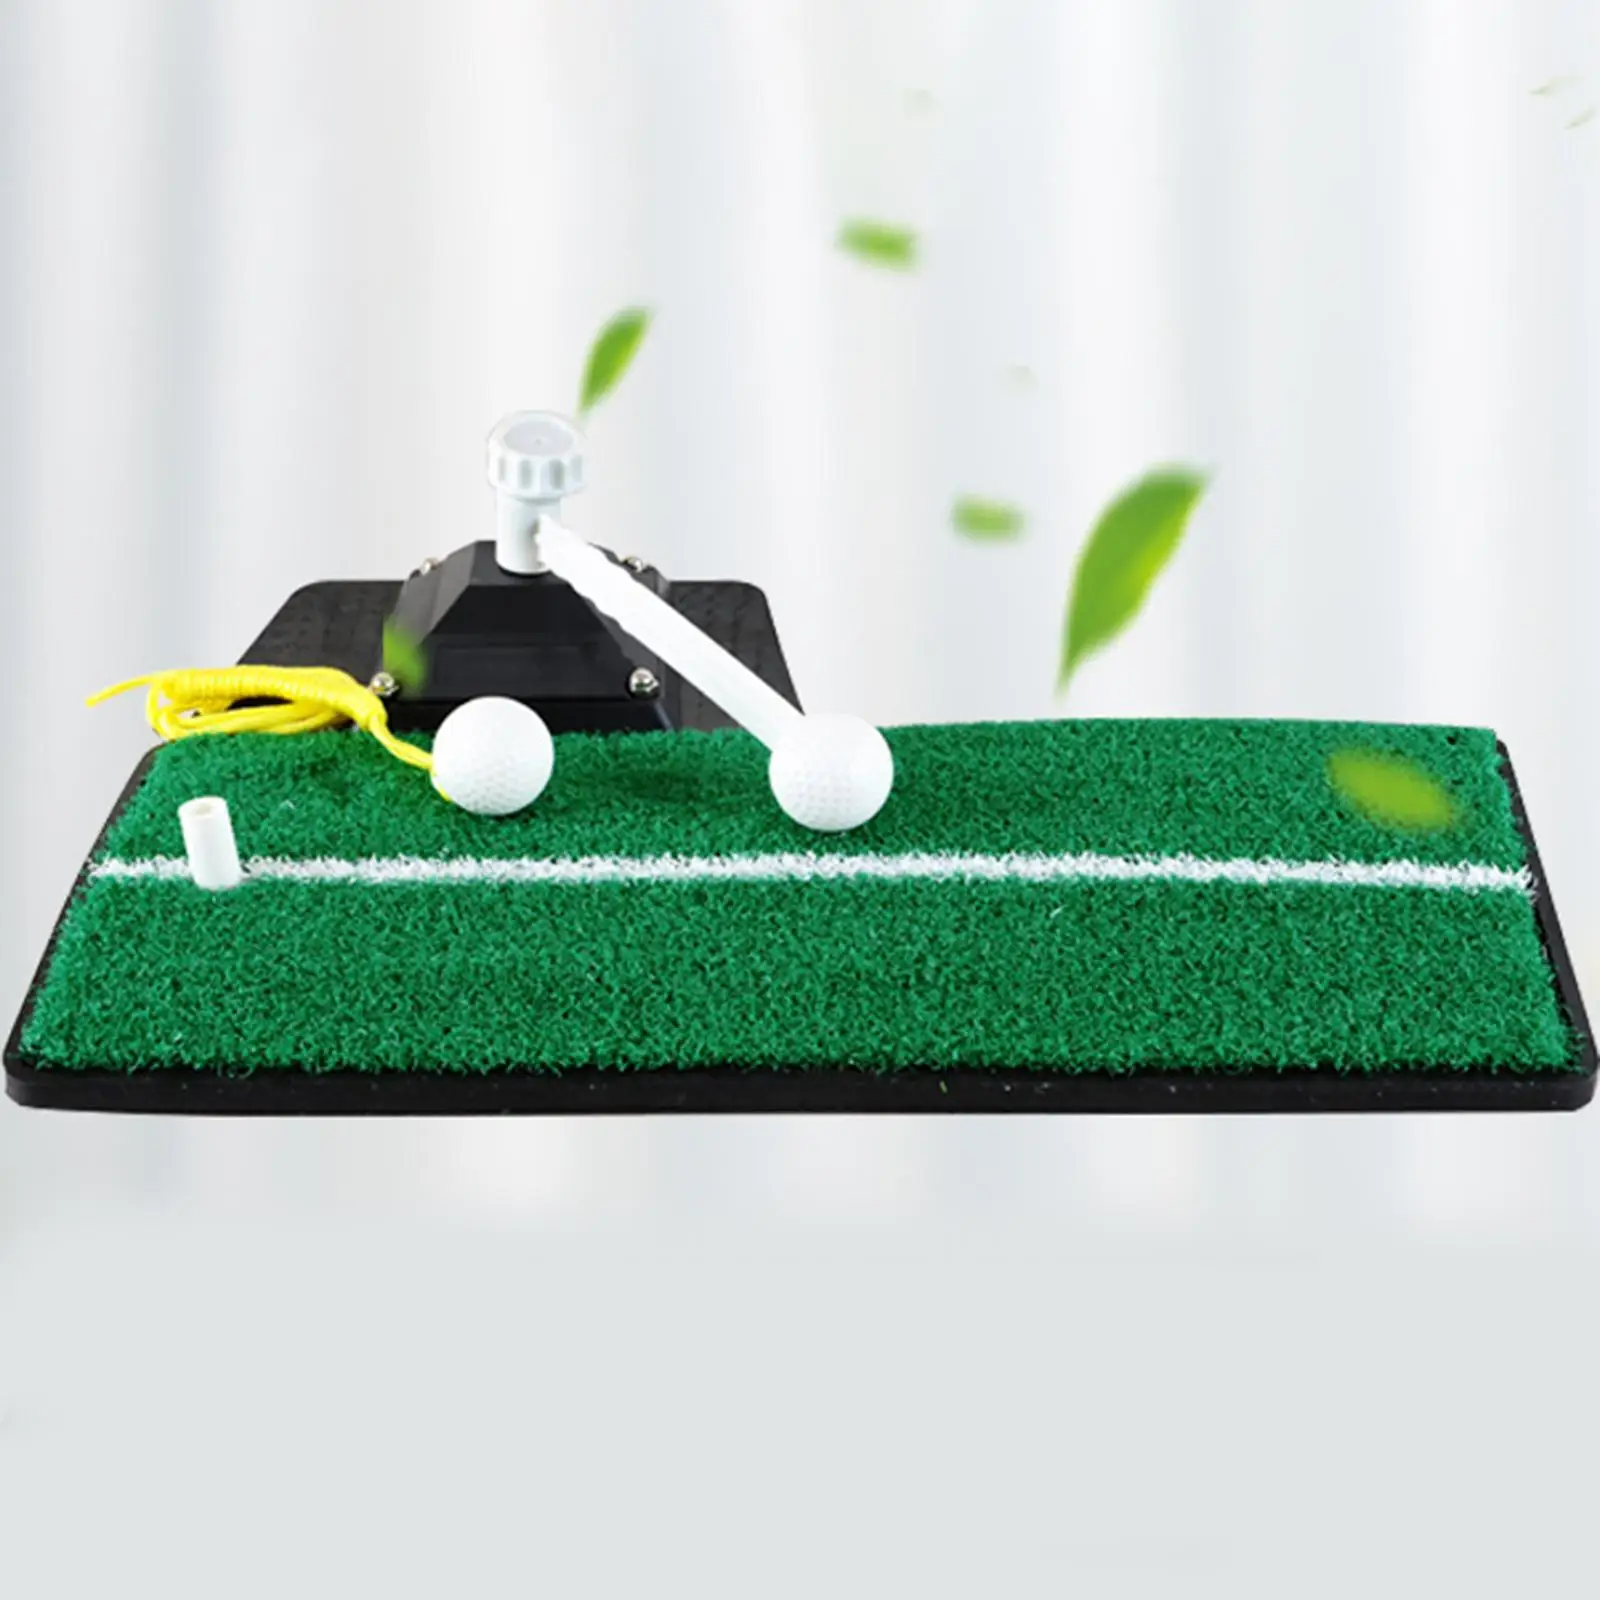 Golf Practice Swing Mat with Rubber Base, Golf Batting Mat Golf Turf Mat